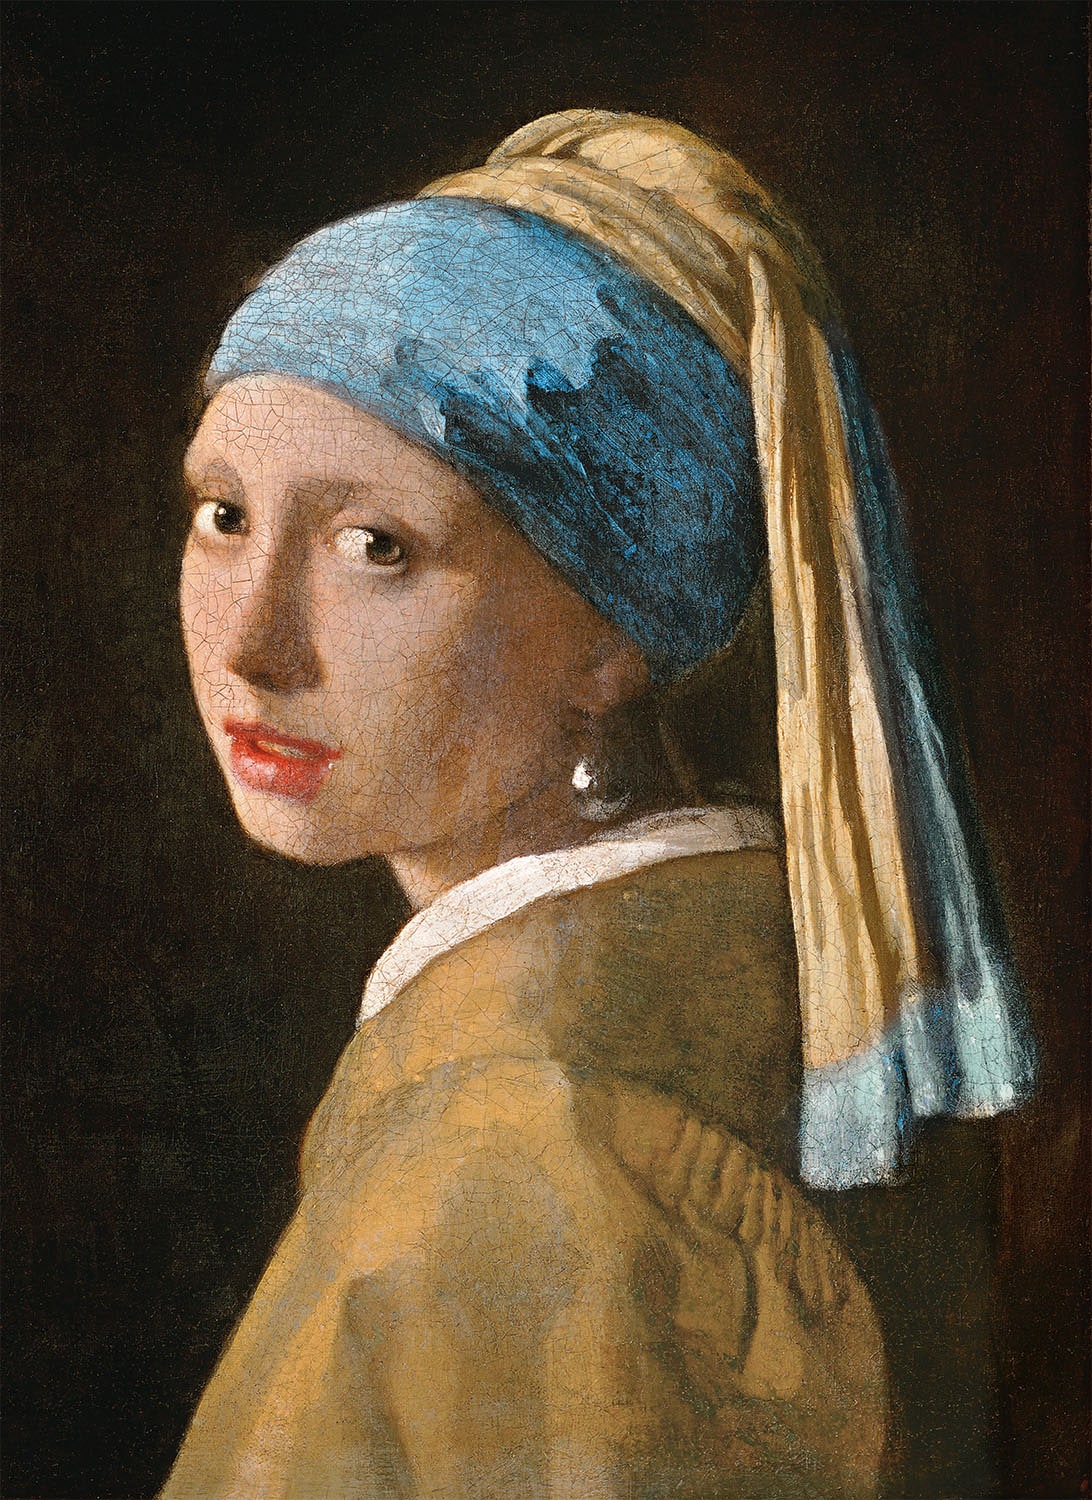 Clementoni® Puzzle »Museum Collection, Vermeer - Das Mädchen mit dem Perlenohrring«, Made in Europe, FSC® - schützt Wald - weltweit